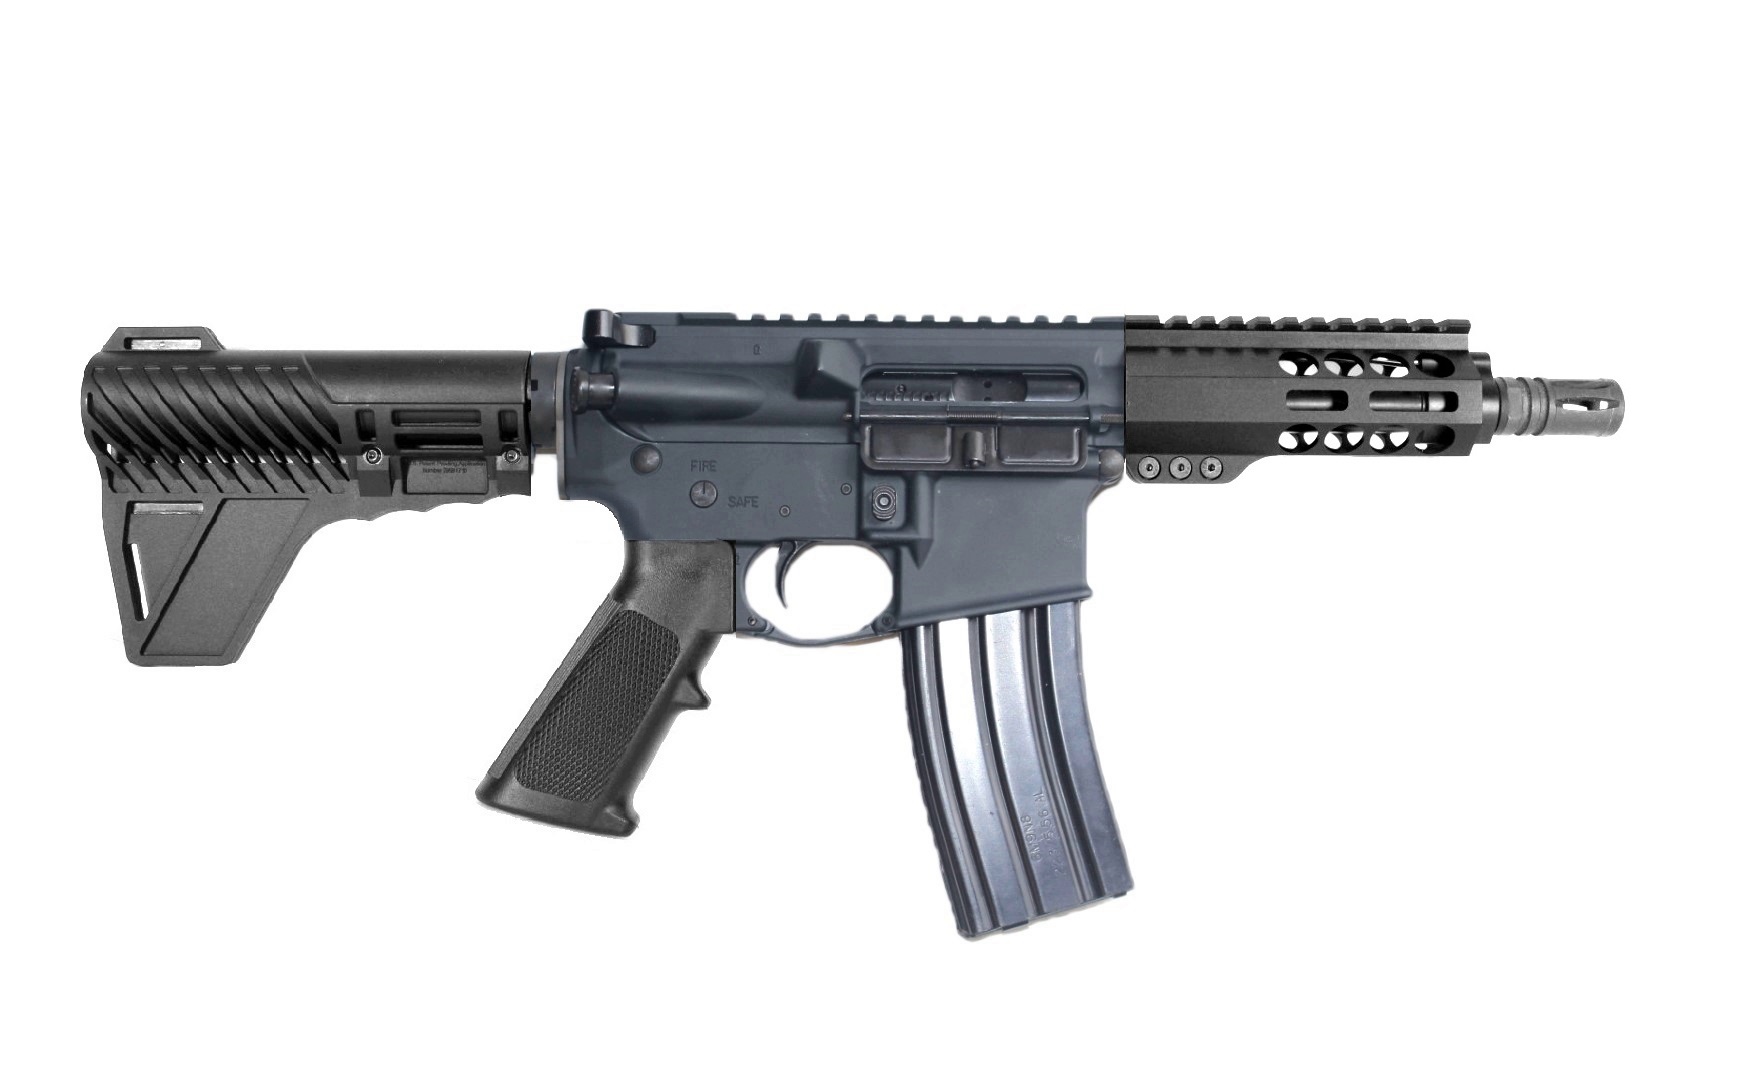 6 inch 300BLK AR Pistol 2 Tone FDE/BLK